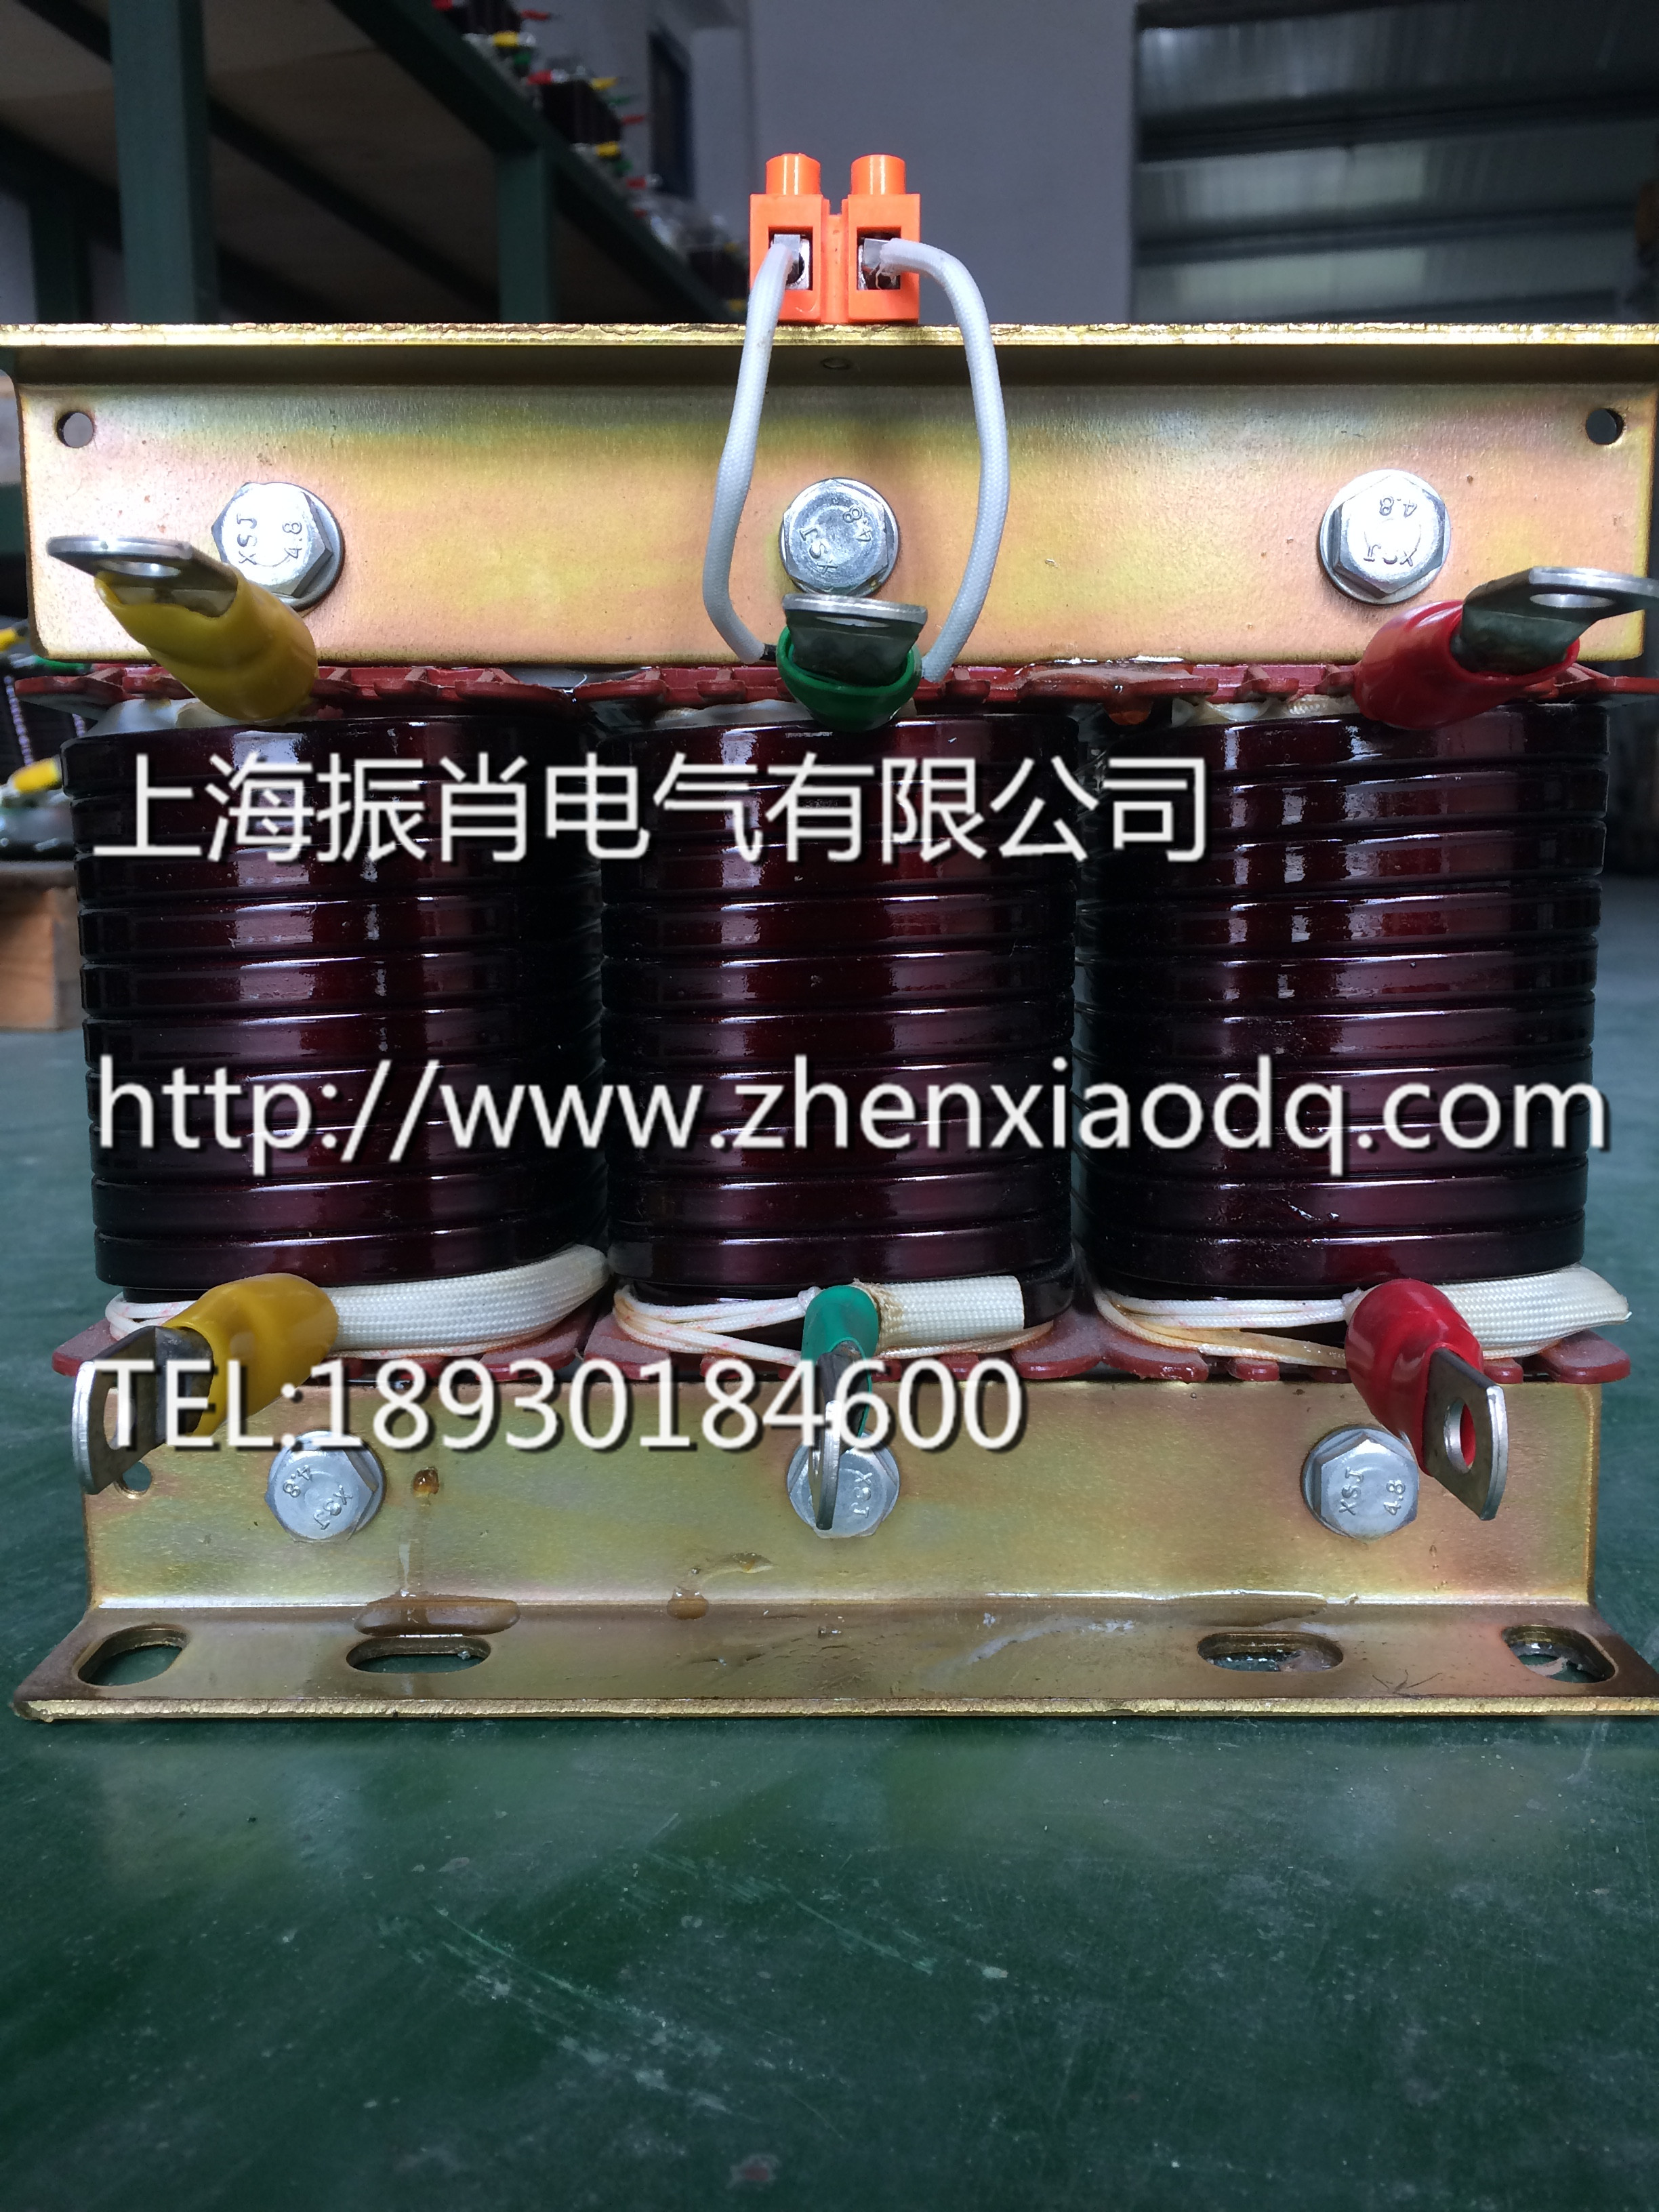 上海市上海变频器调速适配的进线电抗器厂家供应变频器调速适配的进线电抗器 上海变频器调速适配的进线电抗器